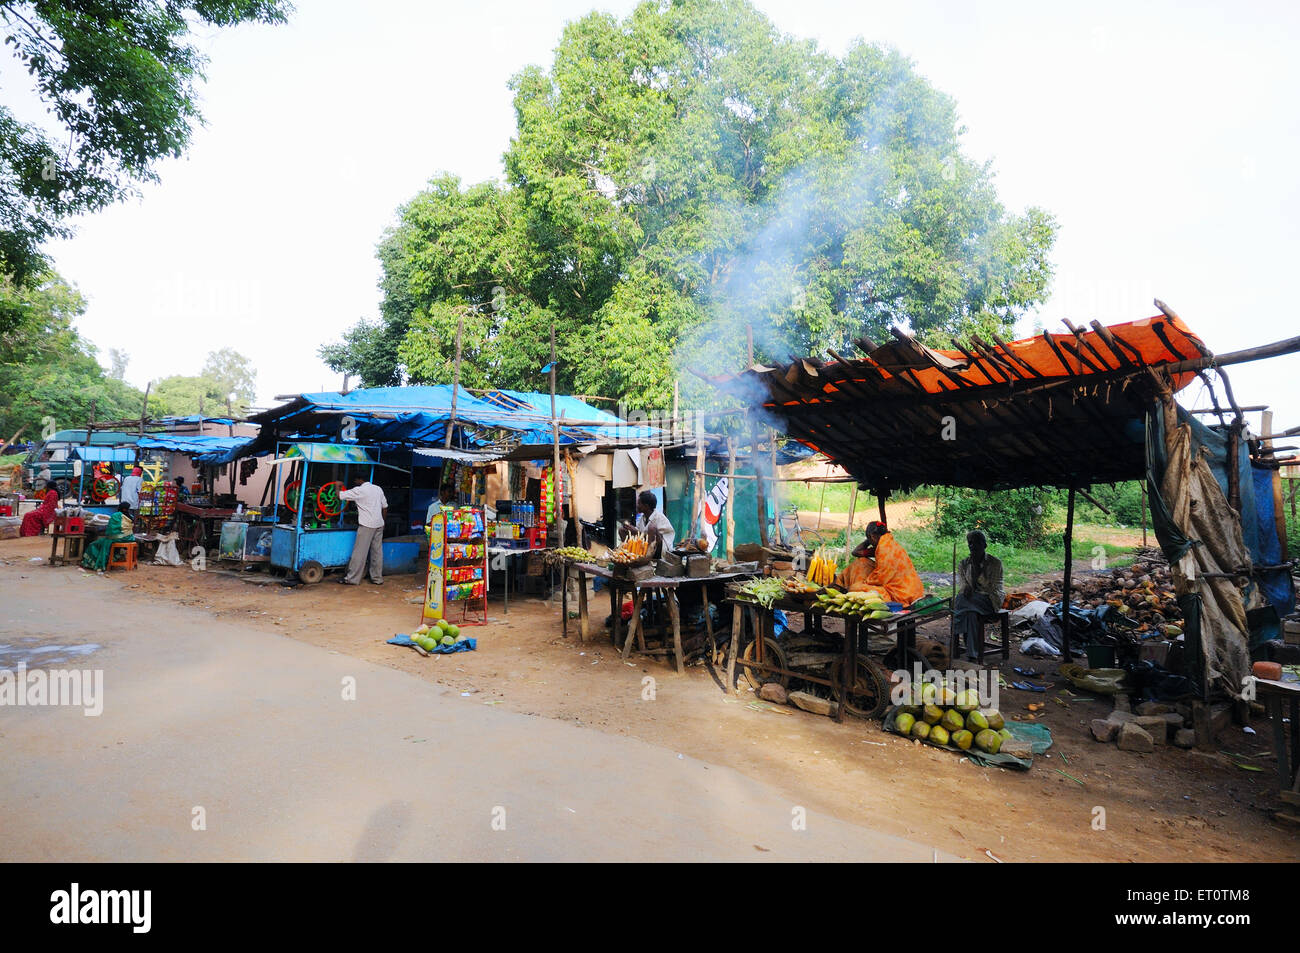 Tiendas de carretera ; Karnataka ; India Foto de stock